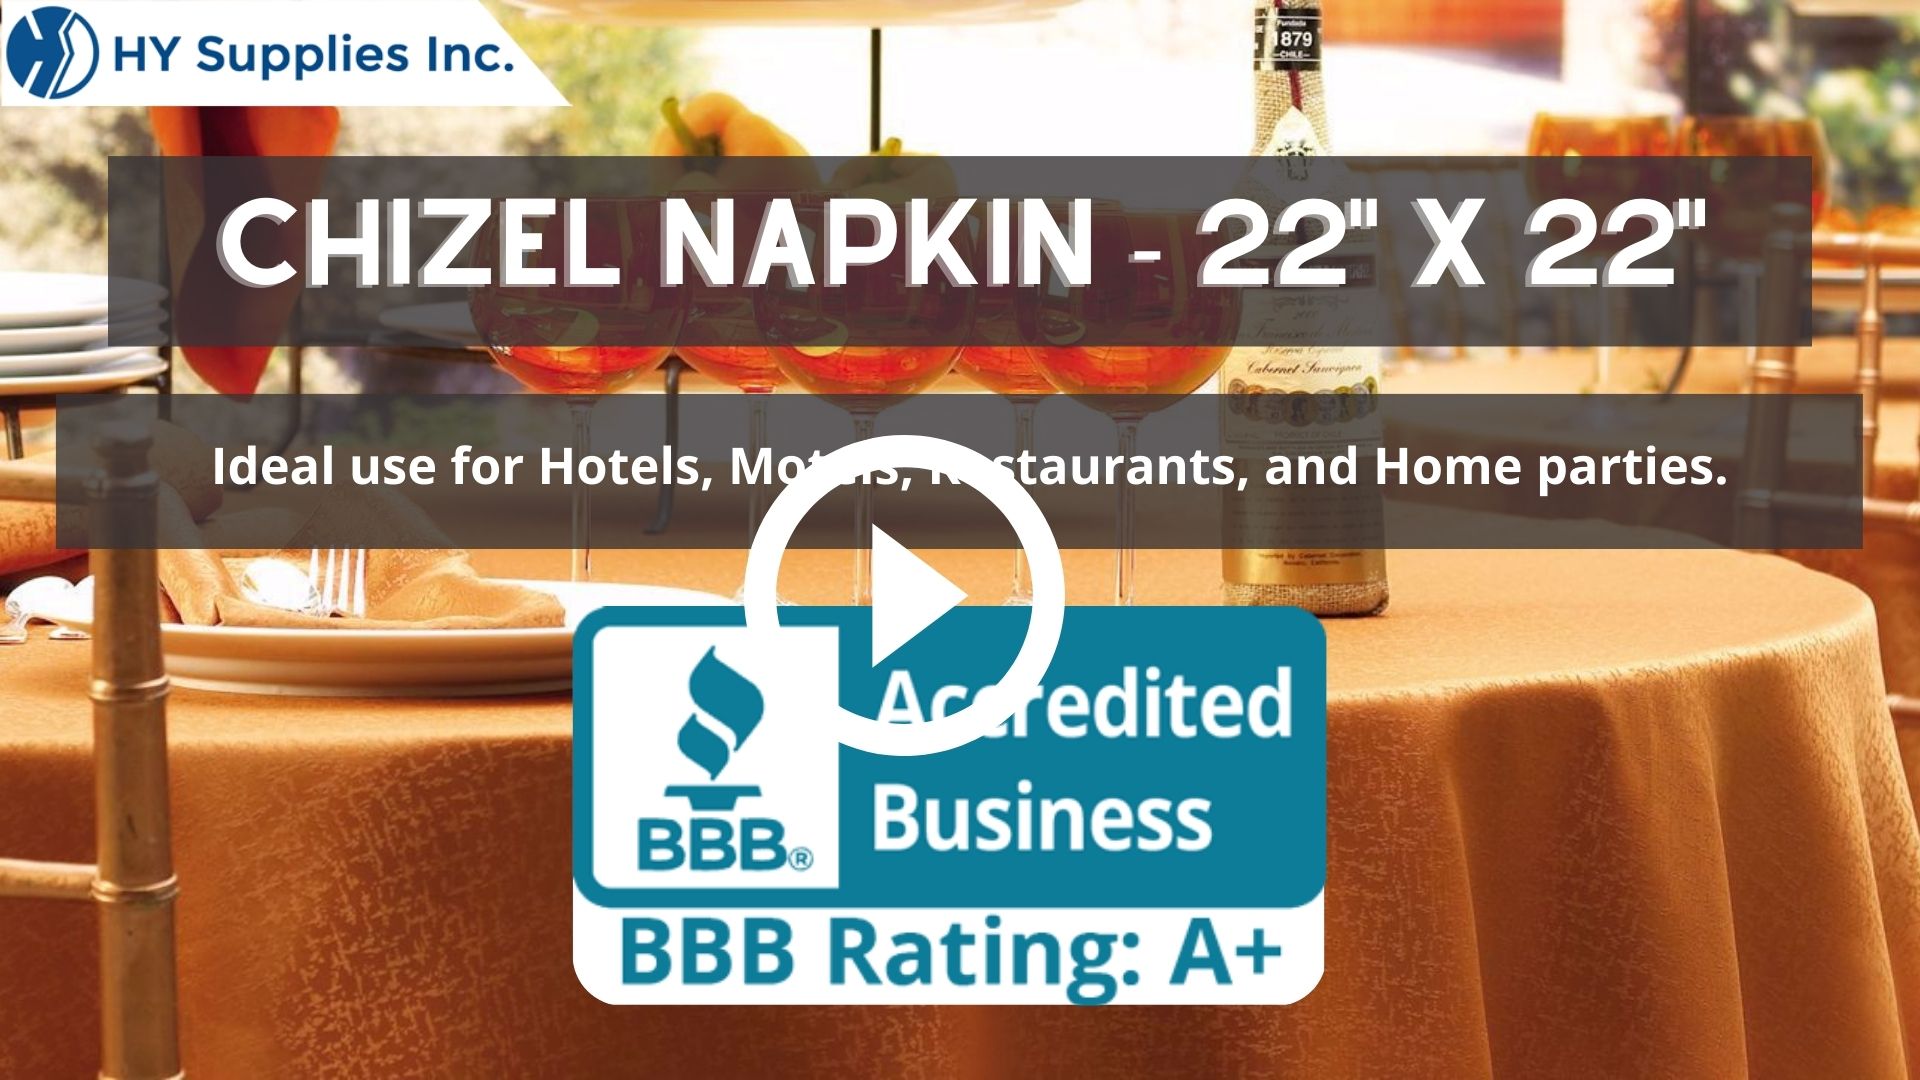 Chizel Napkin - 22" x 22"